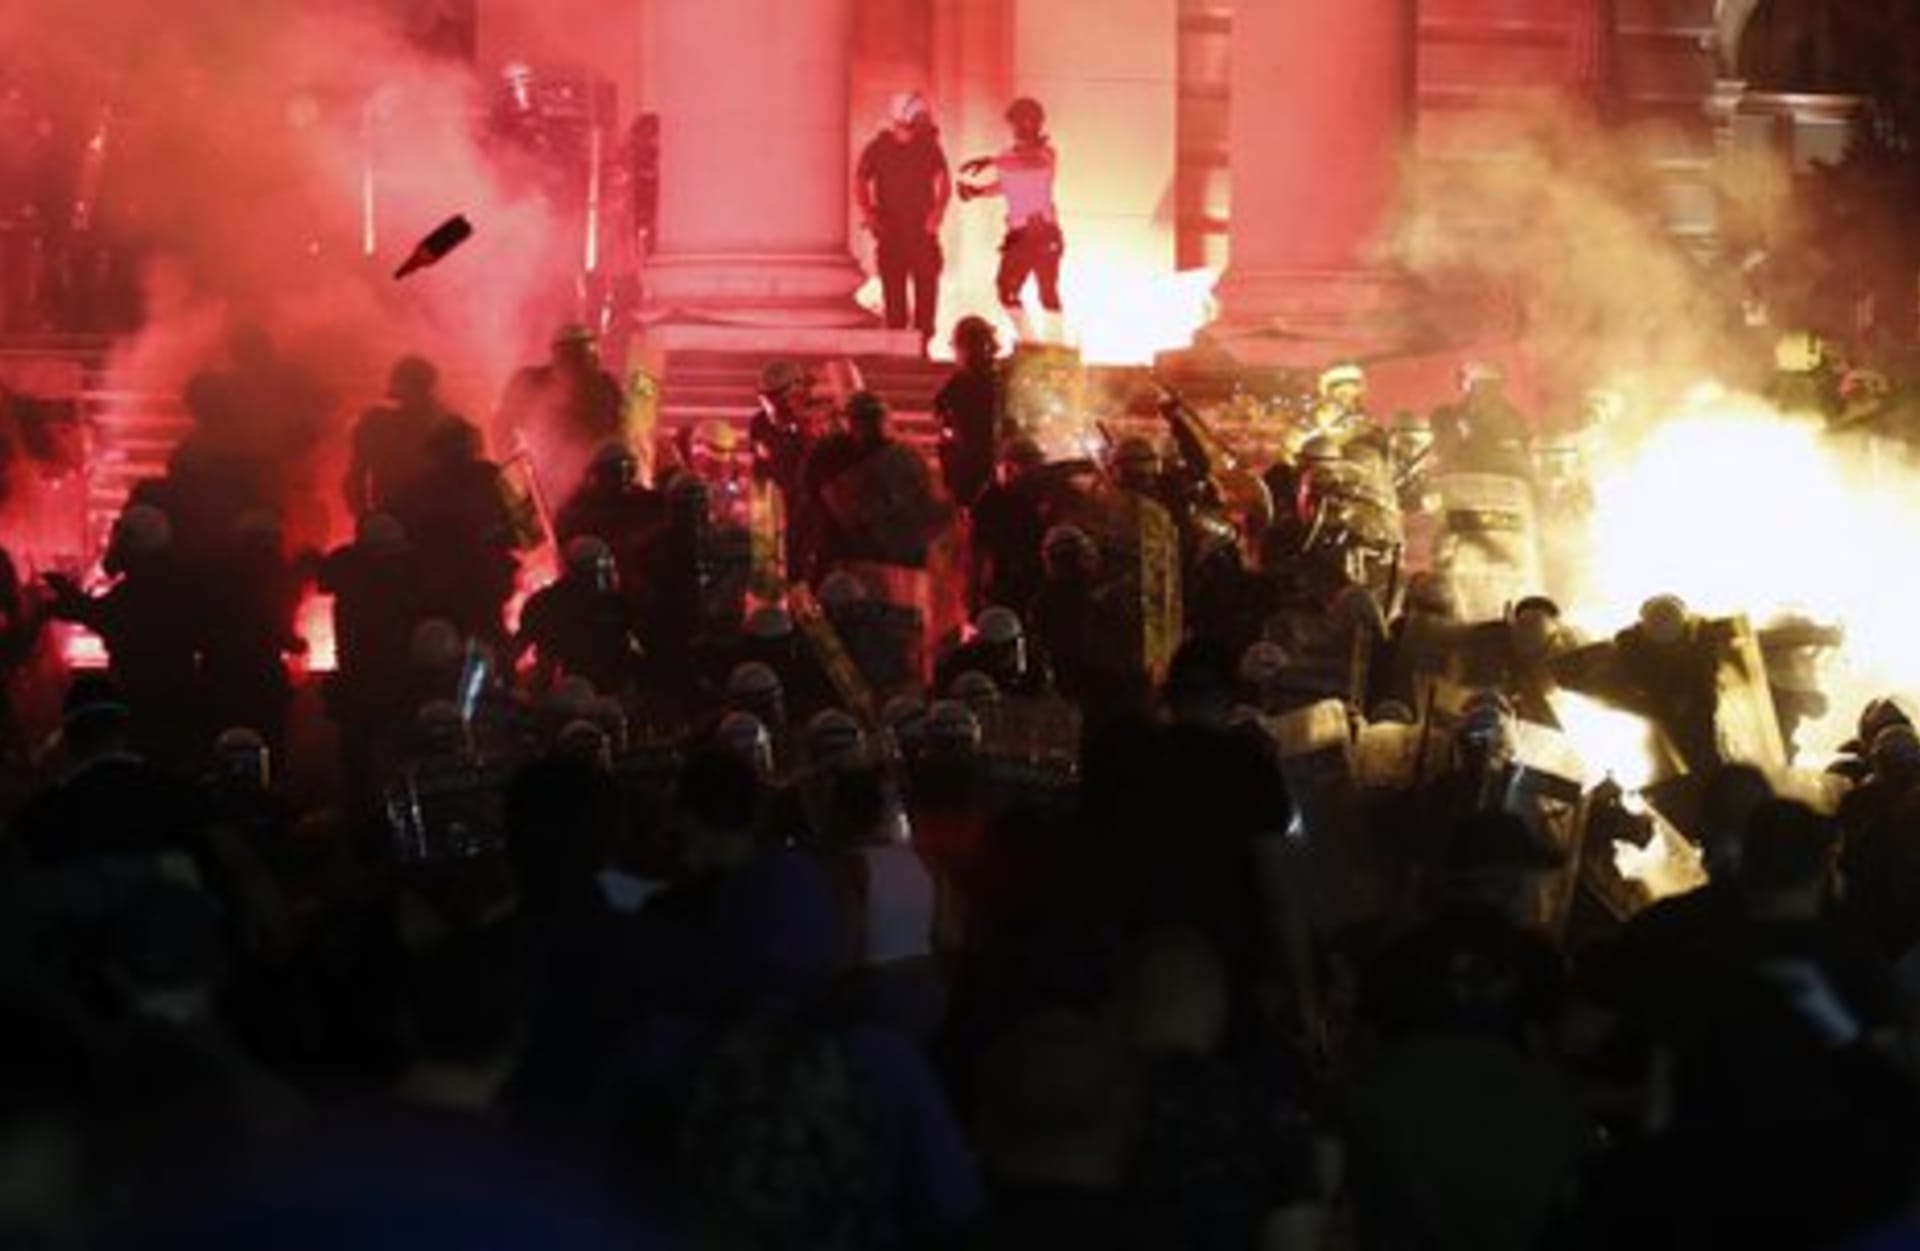 Srbská policie se podle mnoha videí nebojí tvrdě zakročit proti demonstrantům